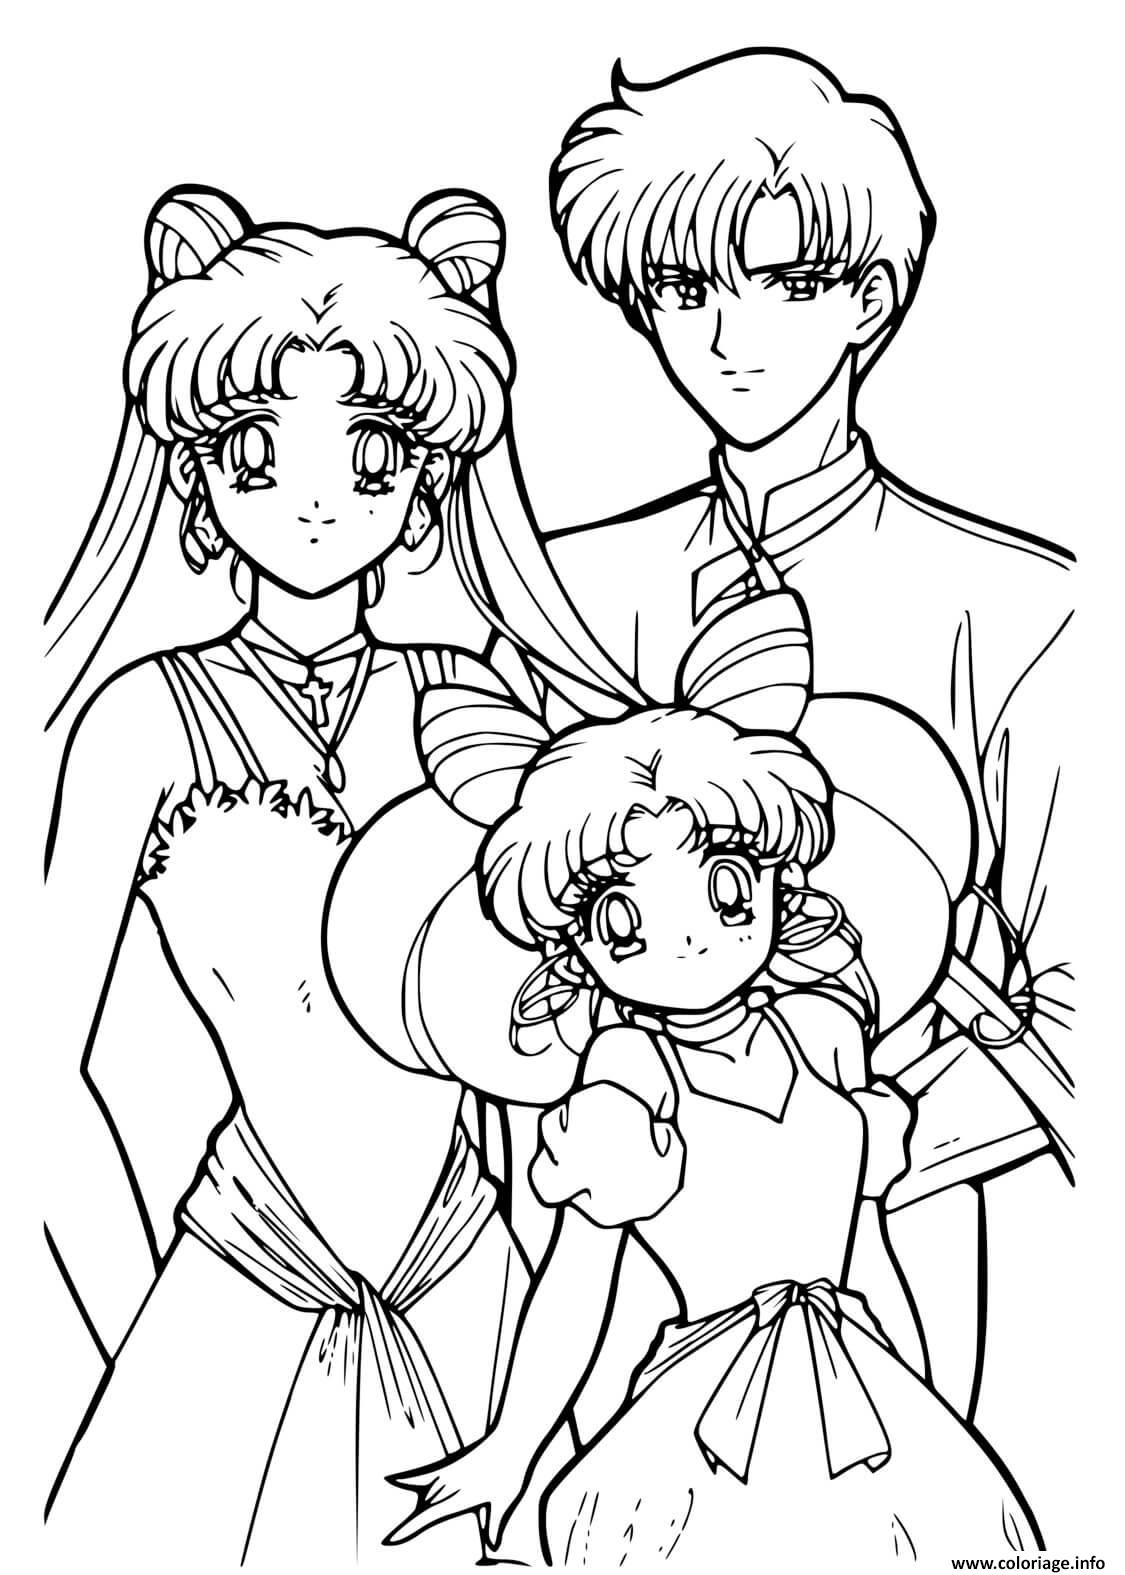 Dessin Sailor Moon Family moment Coloriage Gratuit à Imprimer